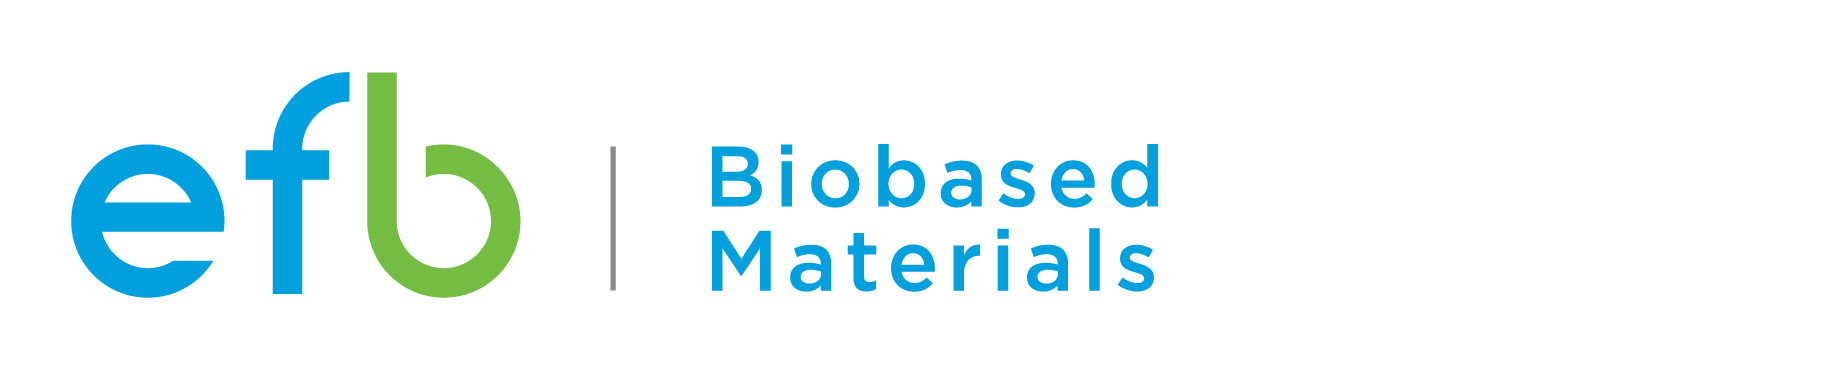 EFB Biobased Material Division